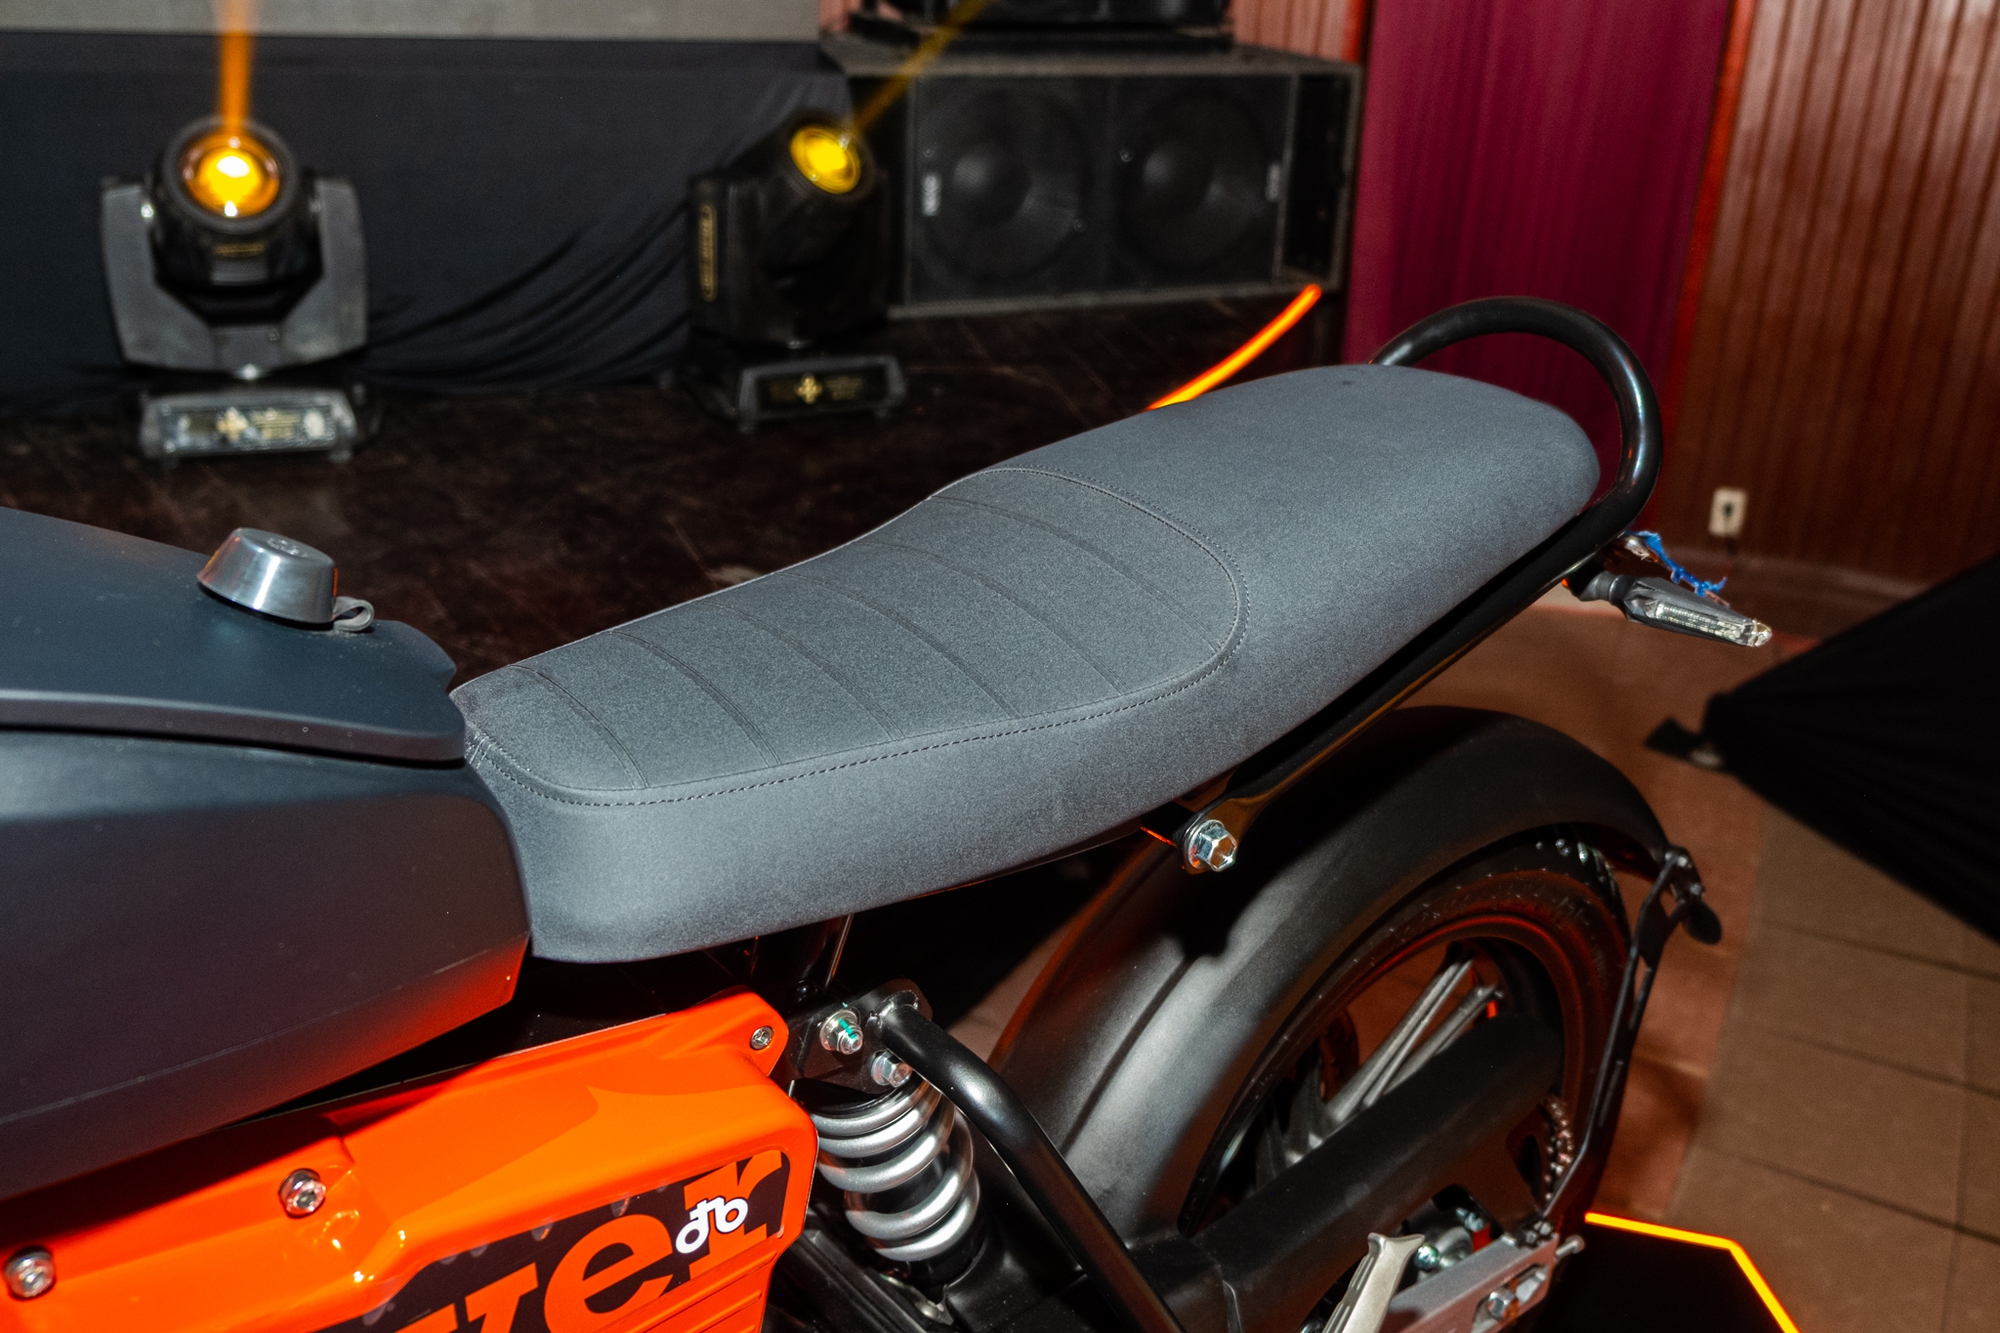 Ra mắt Dat Bike Weaver++: Giá 65,9 triệu đồng, dáng cổ điển, sạc nhanh chưa từng có tại Việt Nam - ảnh 14